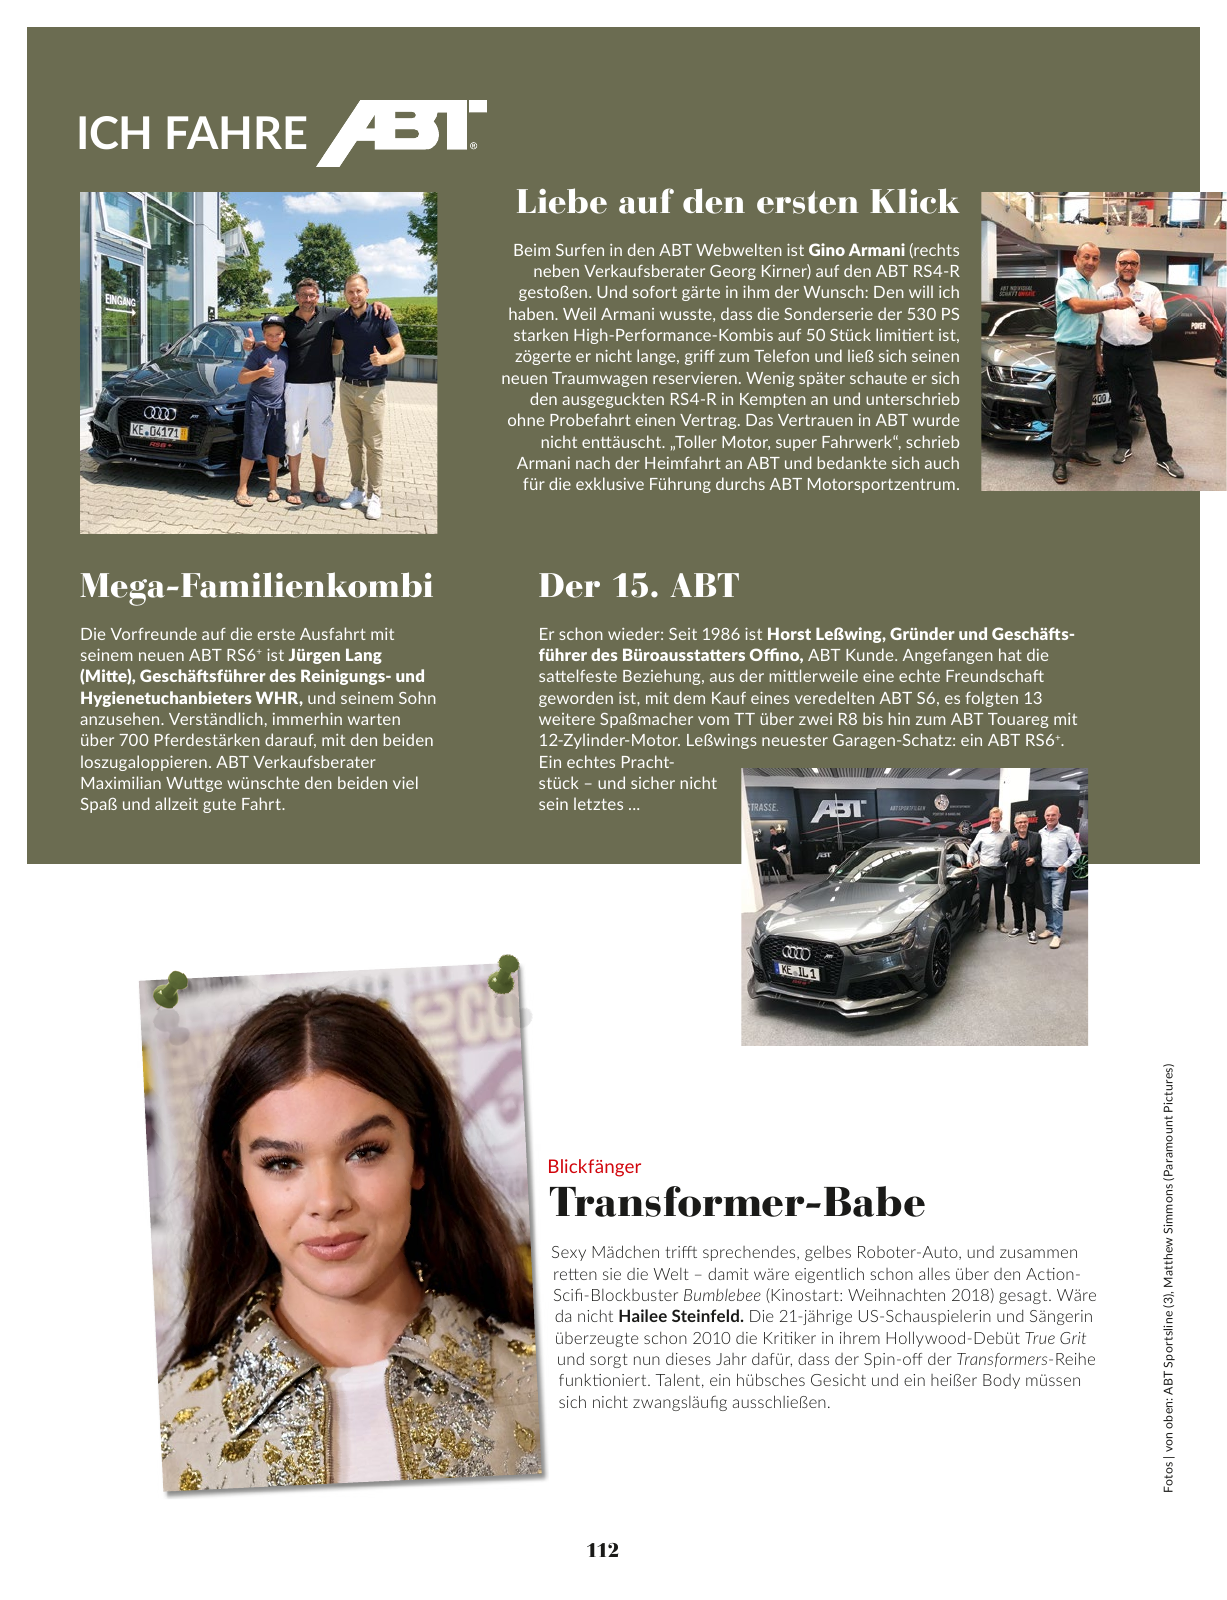 Vorschau uptrend 03/2018 Seite 114